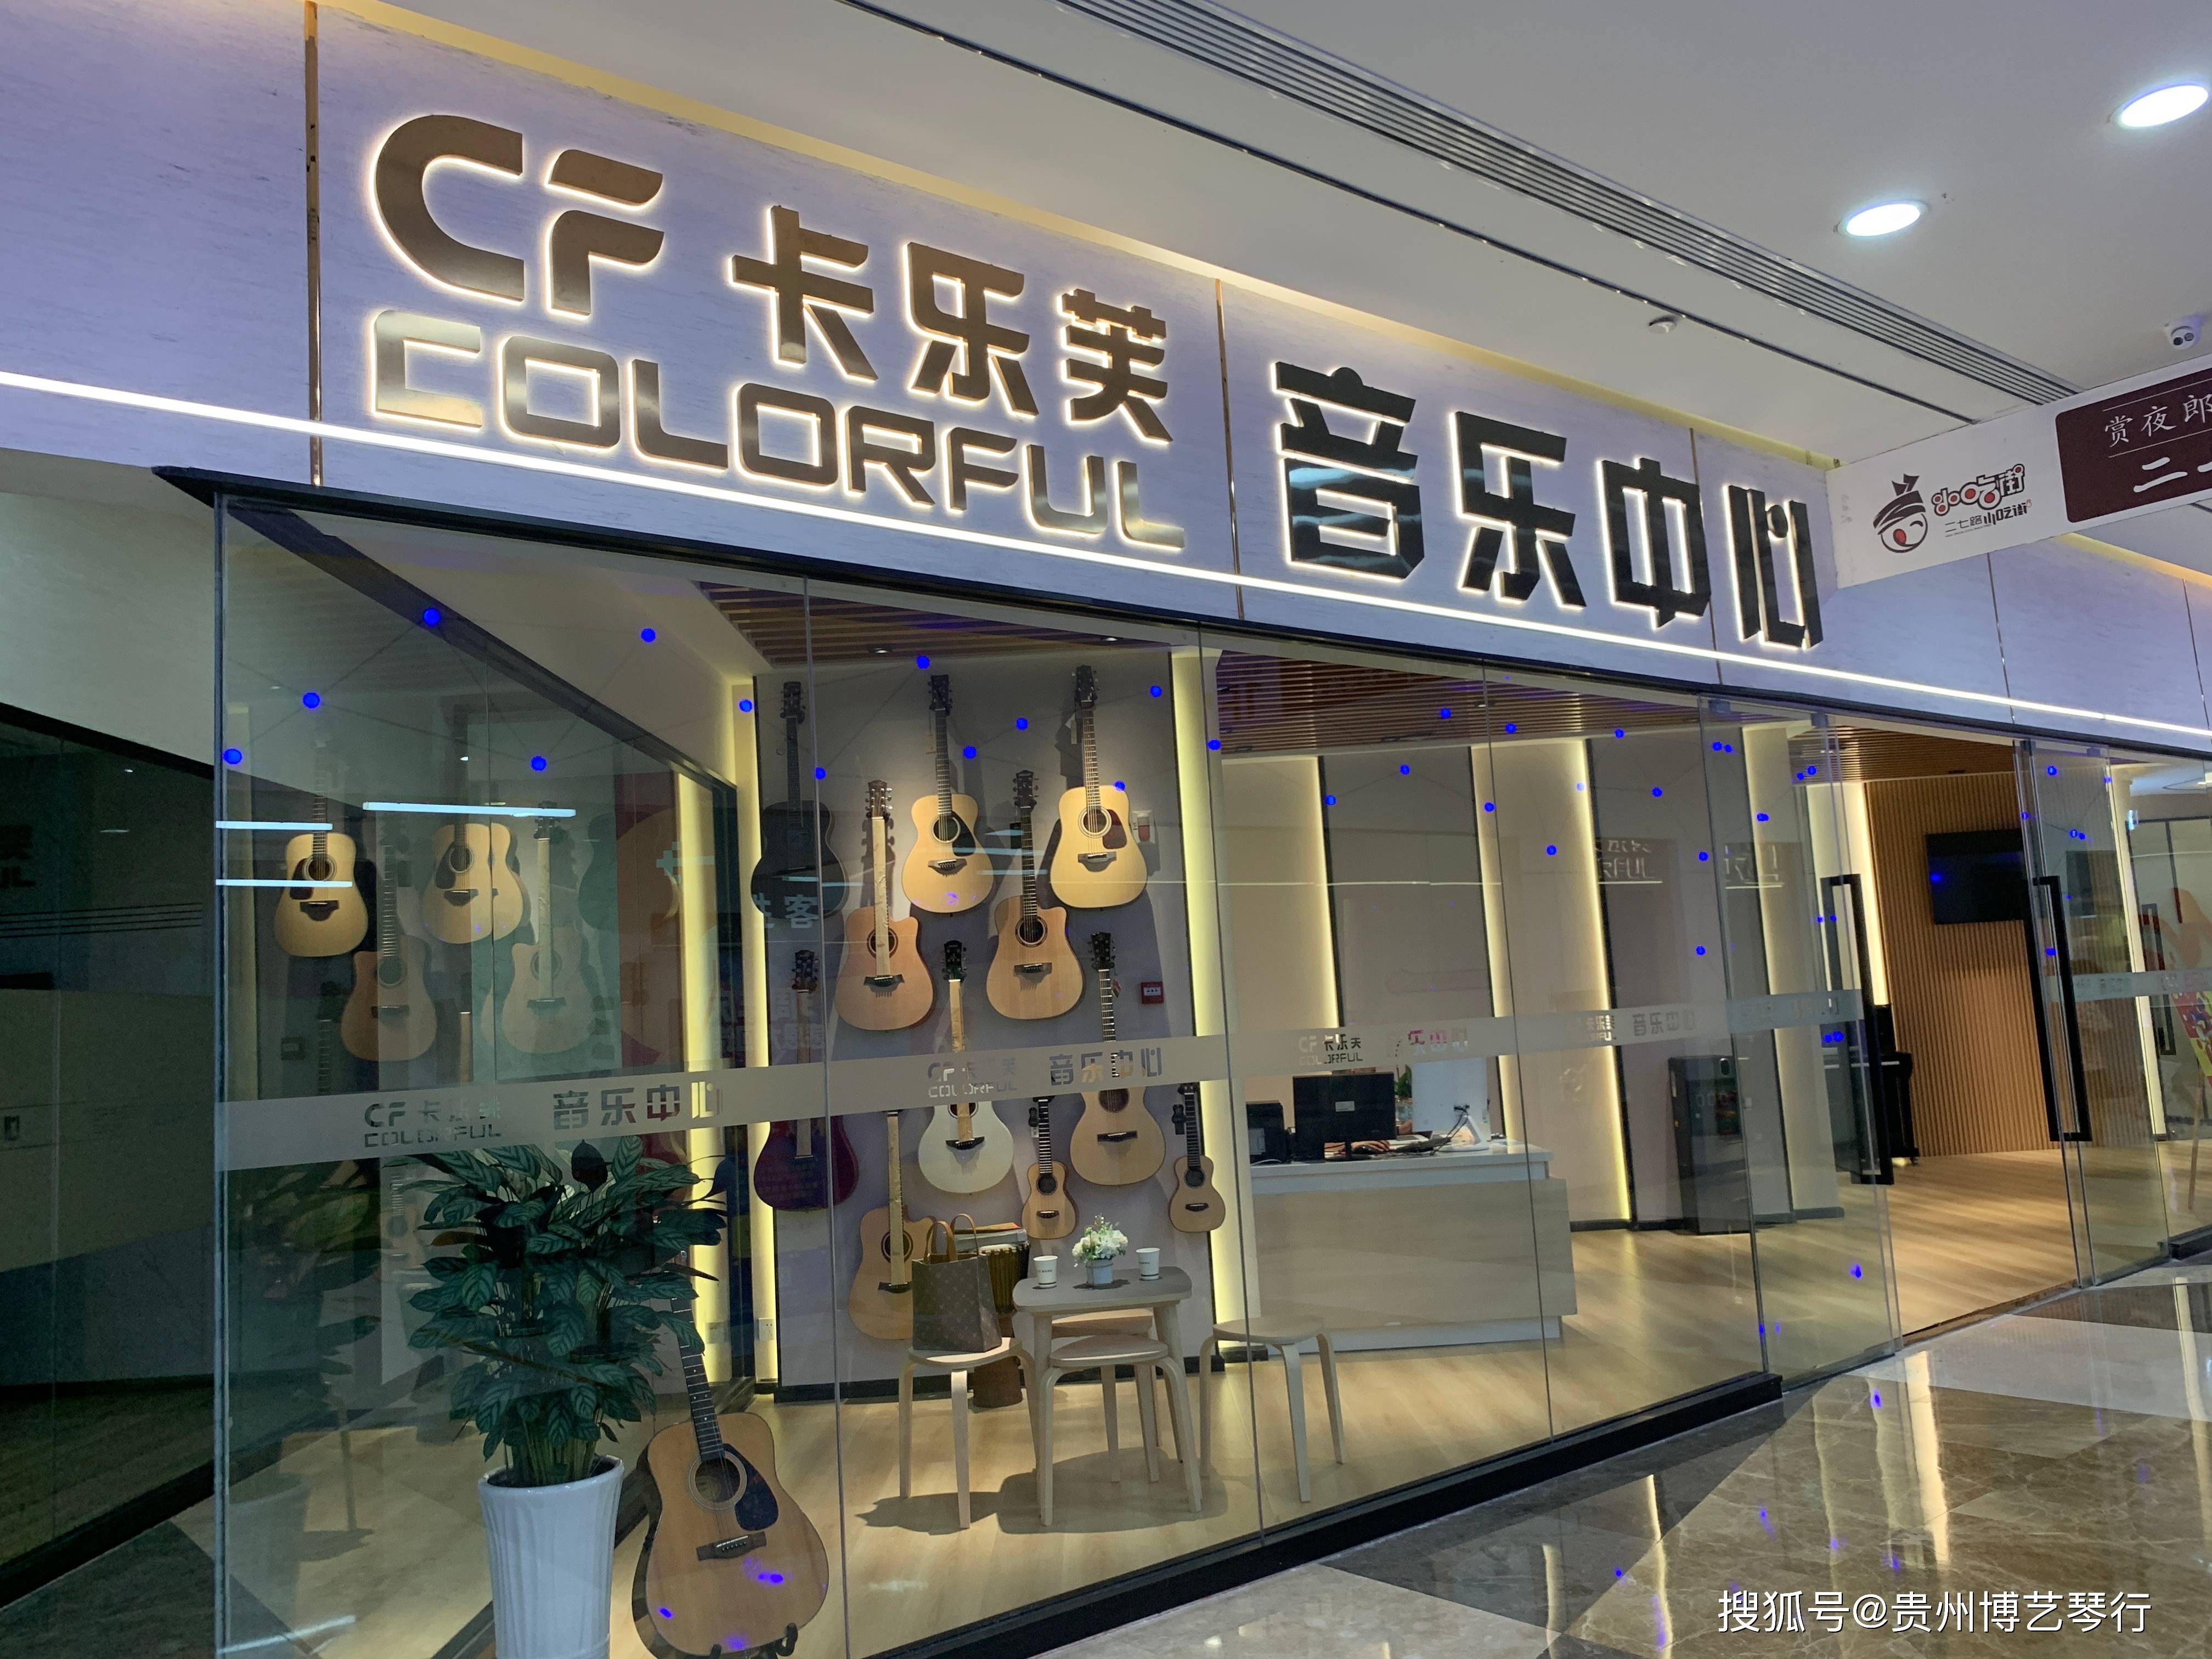 贵州贵阳卡乐芙音乐中心是知名音乐智能教育品牌戴纳索斯(国际)教育旗